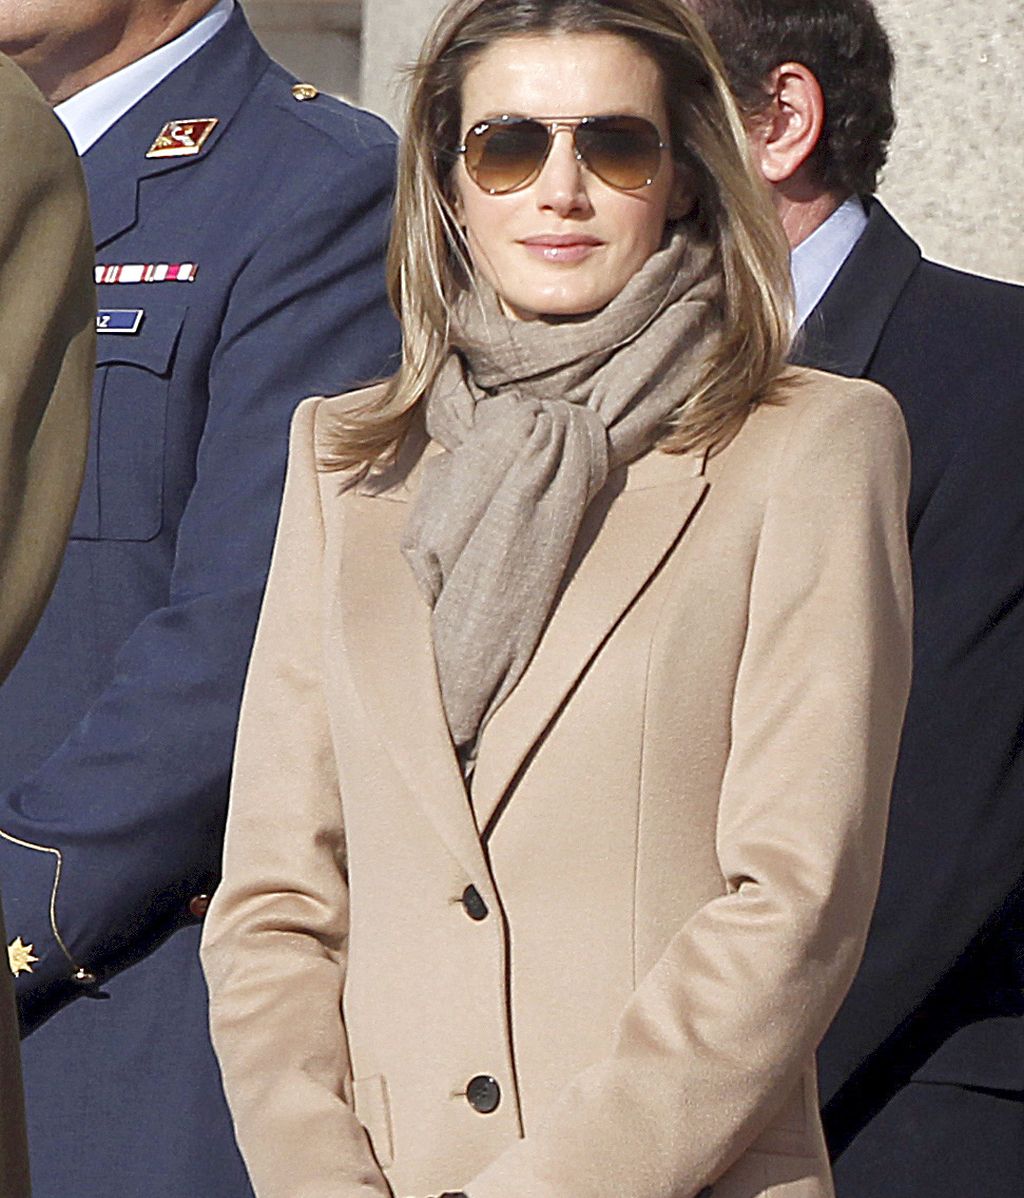 Los príncipes de Asturias presiden el cambio de guardia en el Palacio Real de Madrid